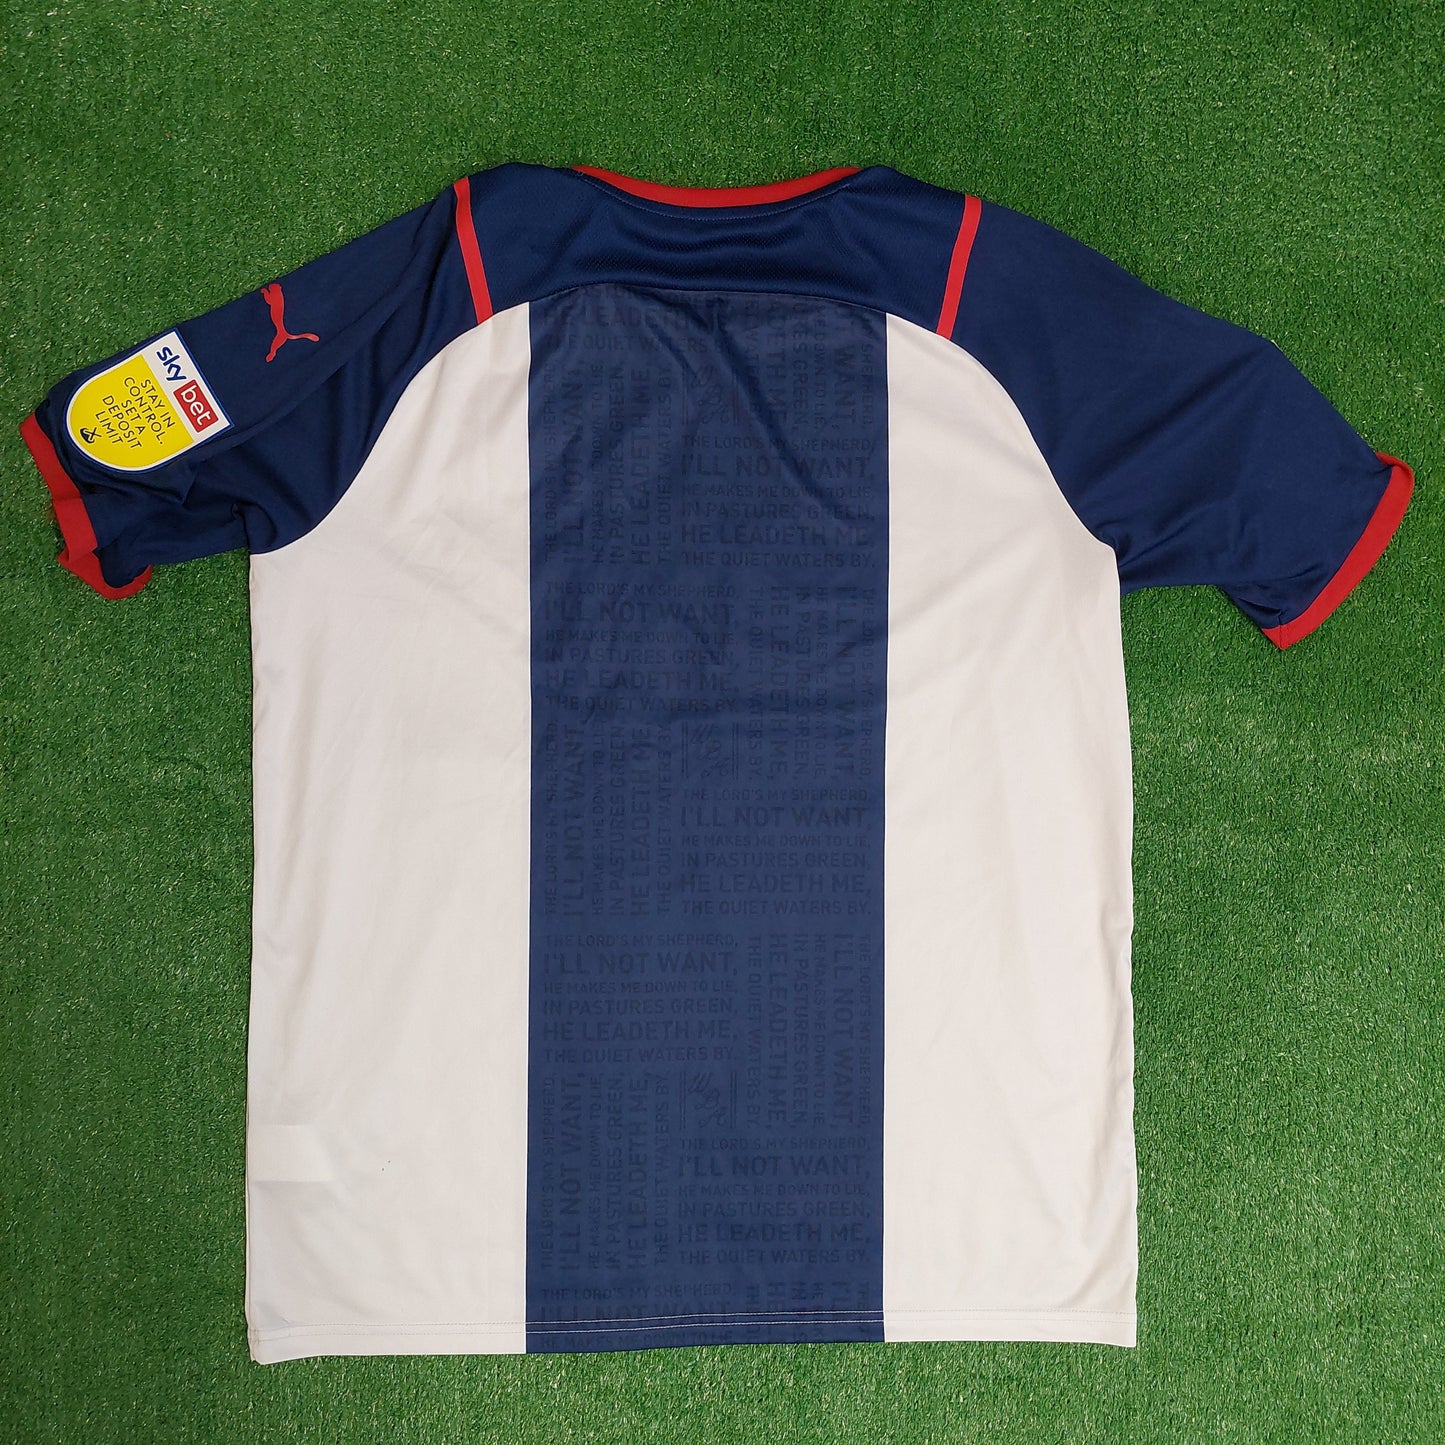 West Bromwich Albion 2021/22 Home Shirt (Excellent) - Size XL